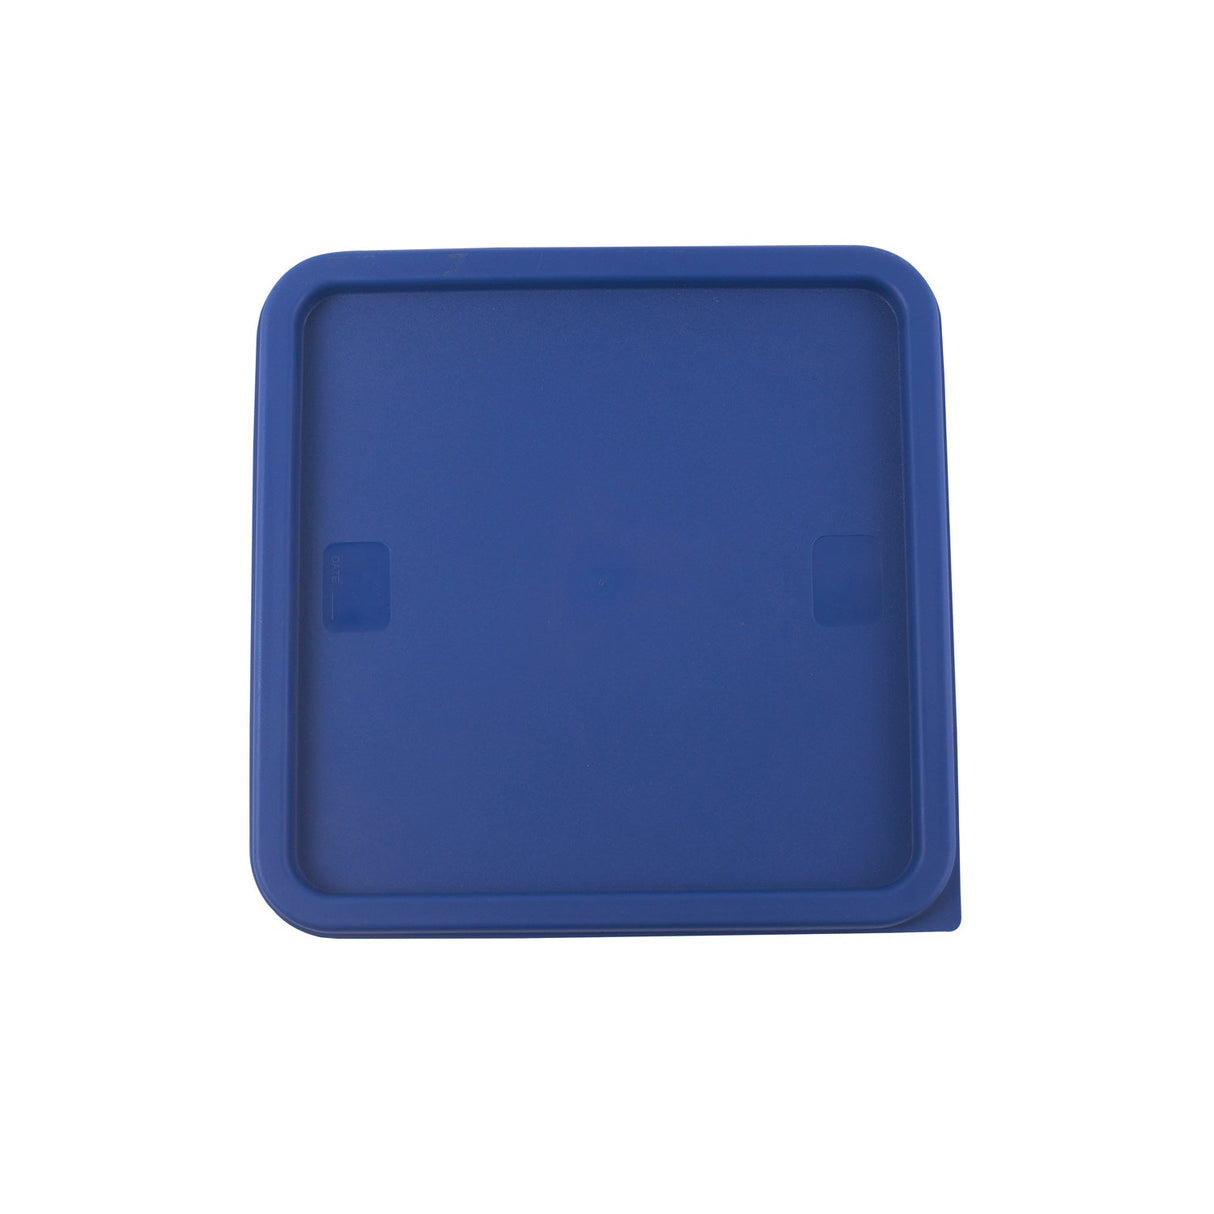 Cover Food Storage Container Square Blue for 12QT, 18QT & 22QT